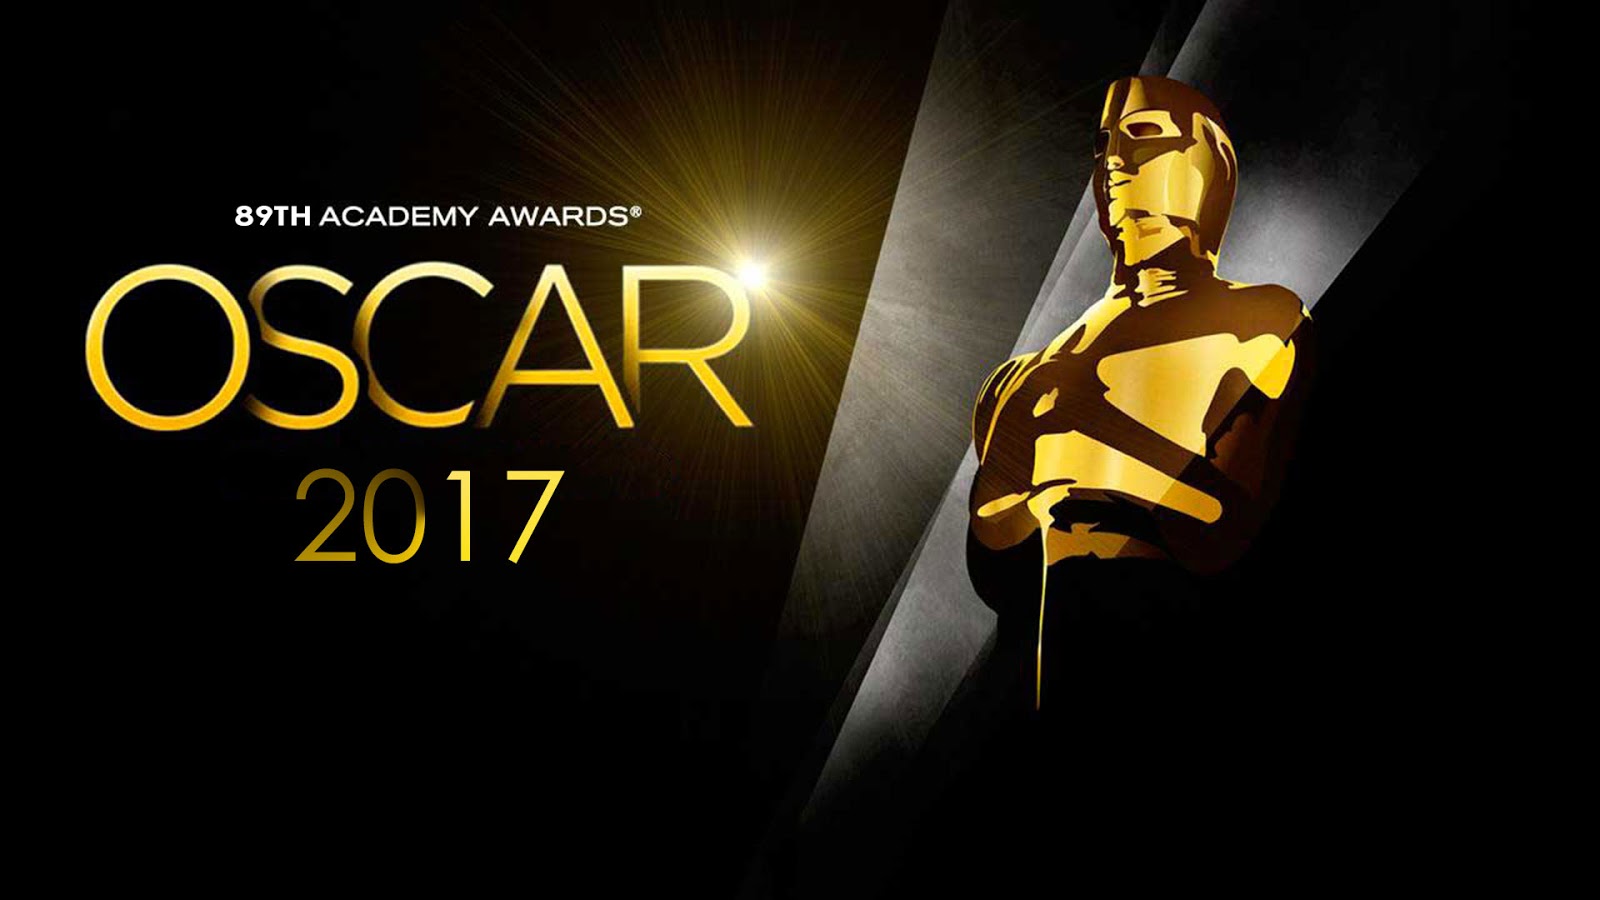 Oscar Ödül Töreni Digiturk 1 No’lu kanalda beIN MOVIES OSCARS kanalında yayınlanacak. Pazar gecesi 00:00'da başlayacak olan yayın, yorumlar, değerlendirmeler, kırmızı halı ile devam edecek ve törenle birlikte sona erecek.  